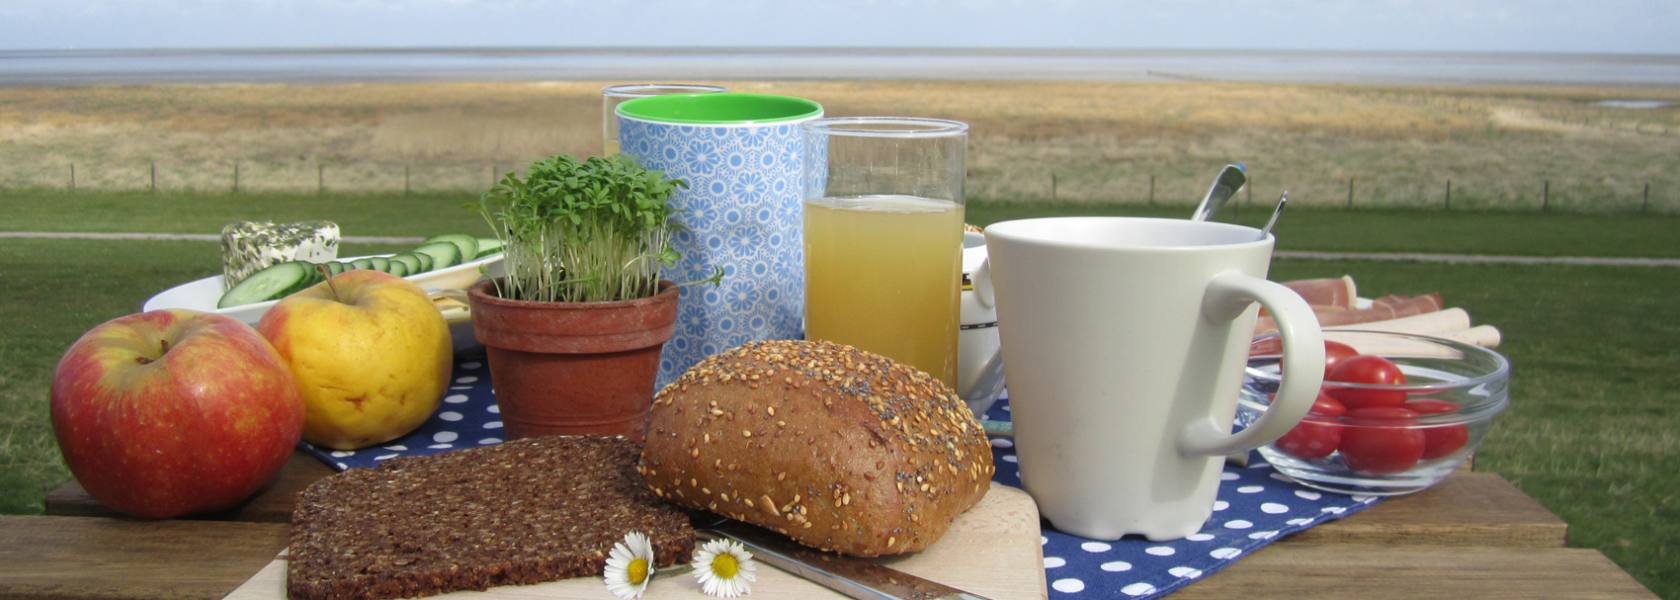 Frühstück auf dem Deich, © Die Nordsee GmbH